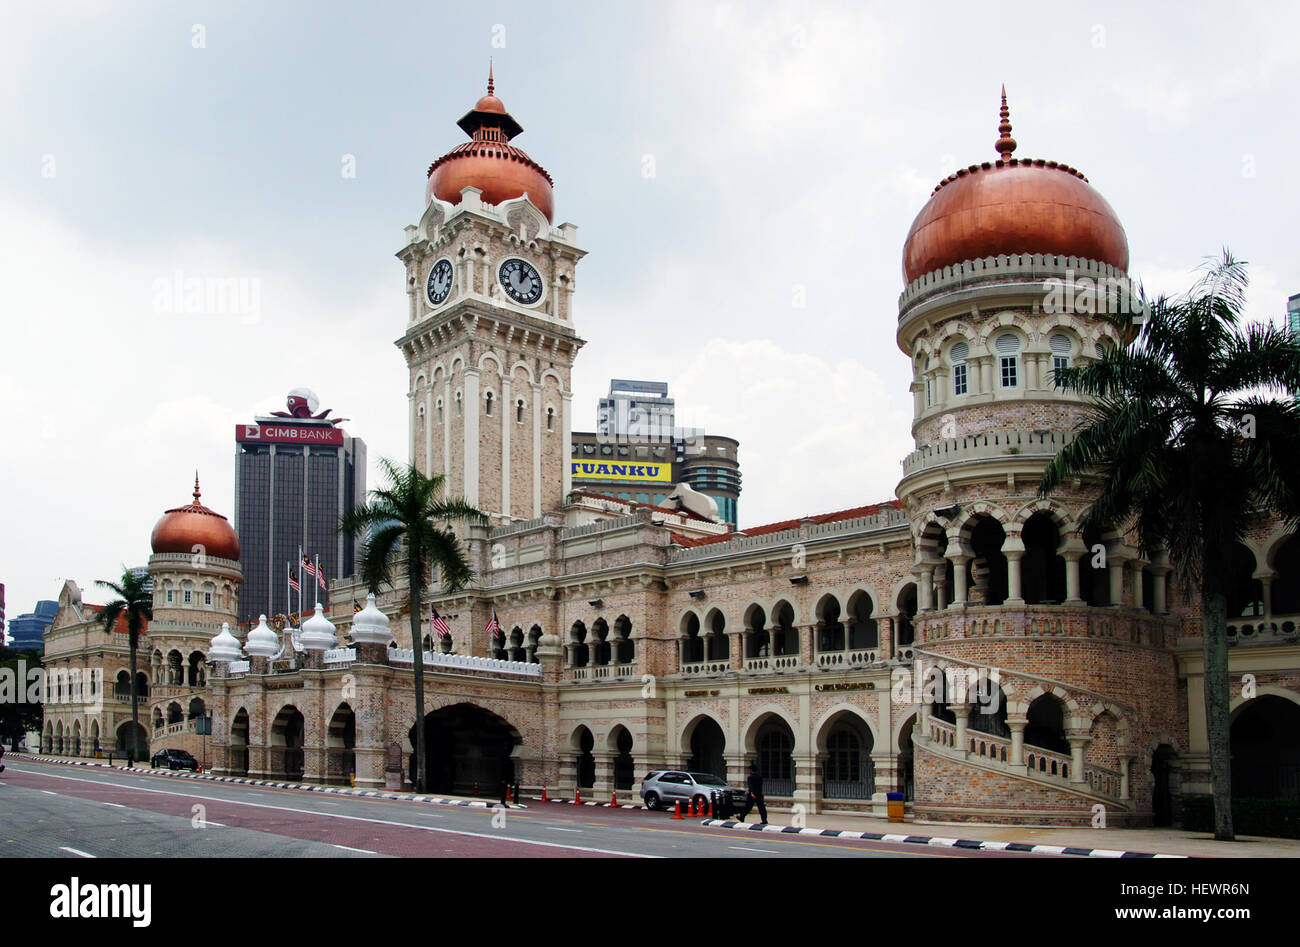 Das Sultan Abdul Samad Gebäude gehört zu Kuala Lumpur frühesten maurischen Bauten. Es befindet sich im Osten der Merdeka Square (Dataran Merdeka) und dem Royal Selangor Club, gegenüber von Jalan Sultan Hishamuddin. Es wurde 1897 erbaut und hieß damals nach dem regierenden Sultan von Selangor.  Das distinguished Wahrzeichen diente ursprünglich als Sekretariat für die britische Kolonialverwaltung. Entworfen von AC Norman, Masjid Jamek (Jamek Moschee) Architekt, der historisch bedeutsame Gebäude verwendet, um den obersten Gerichten der Malaysia Haus: Federal Court Malay Stockfoto